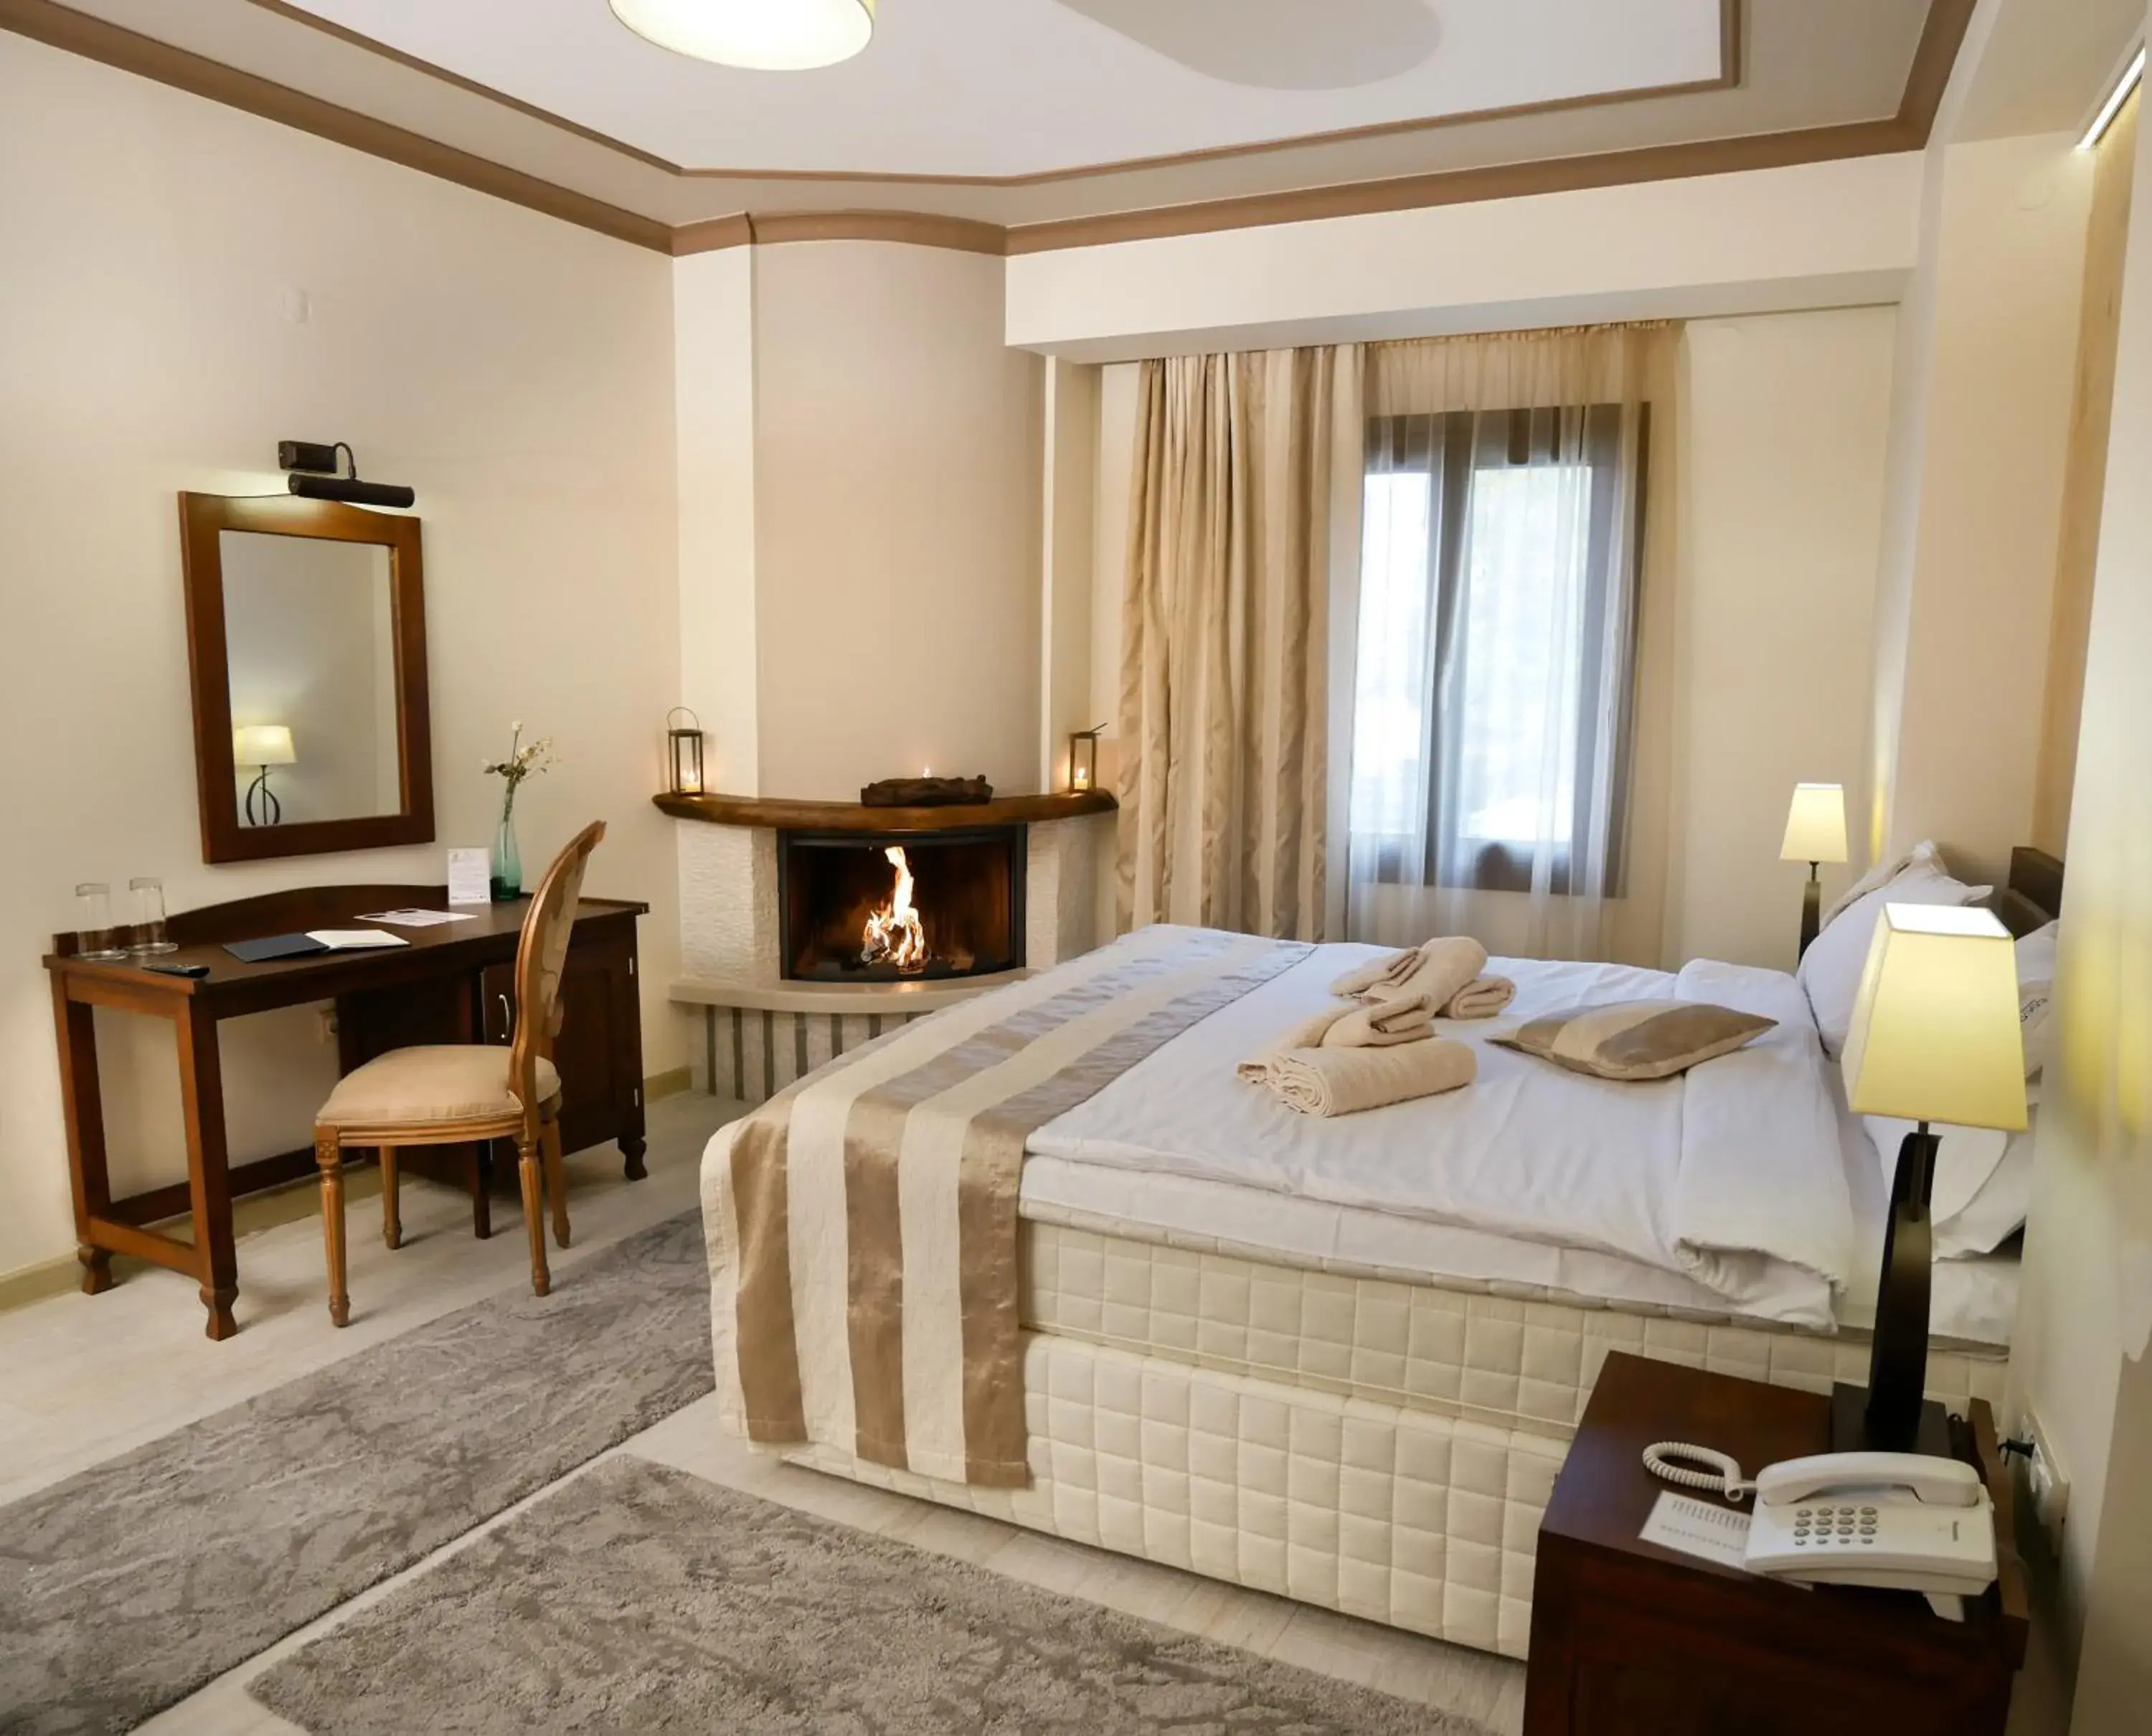 Bedroom in Hotel Rodovoli